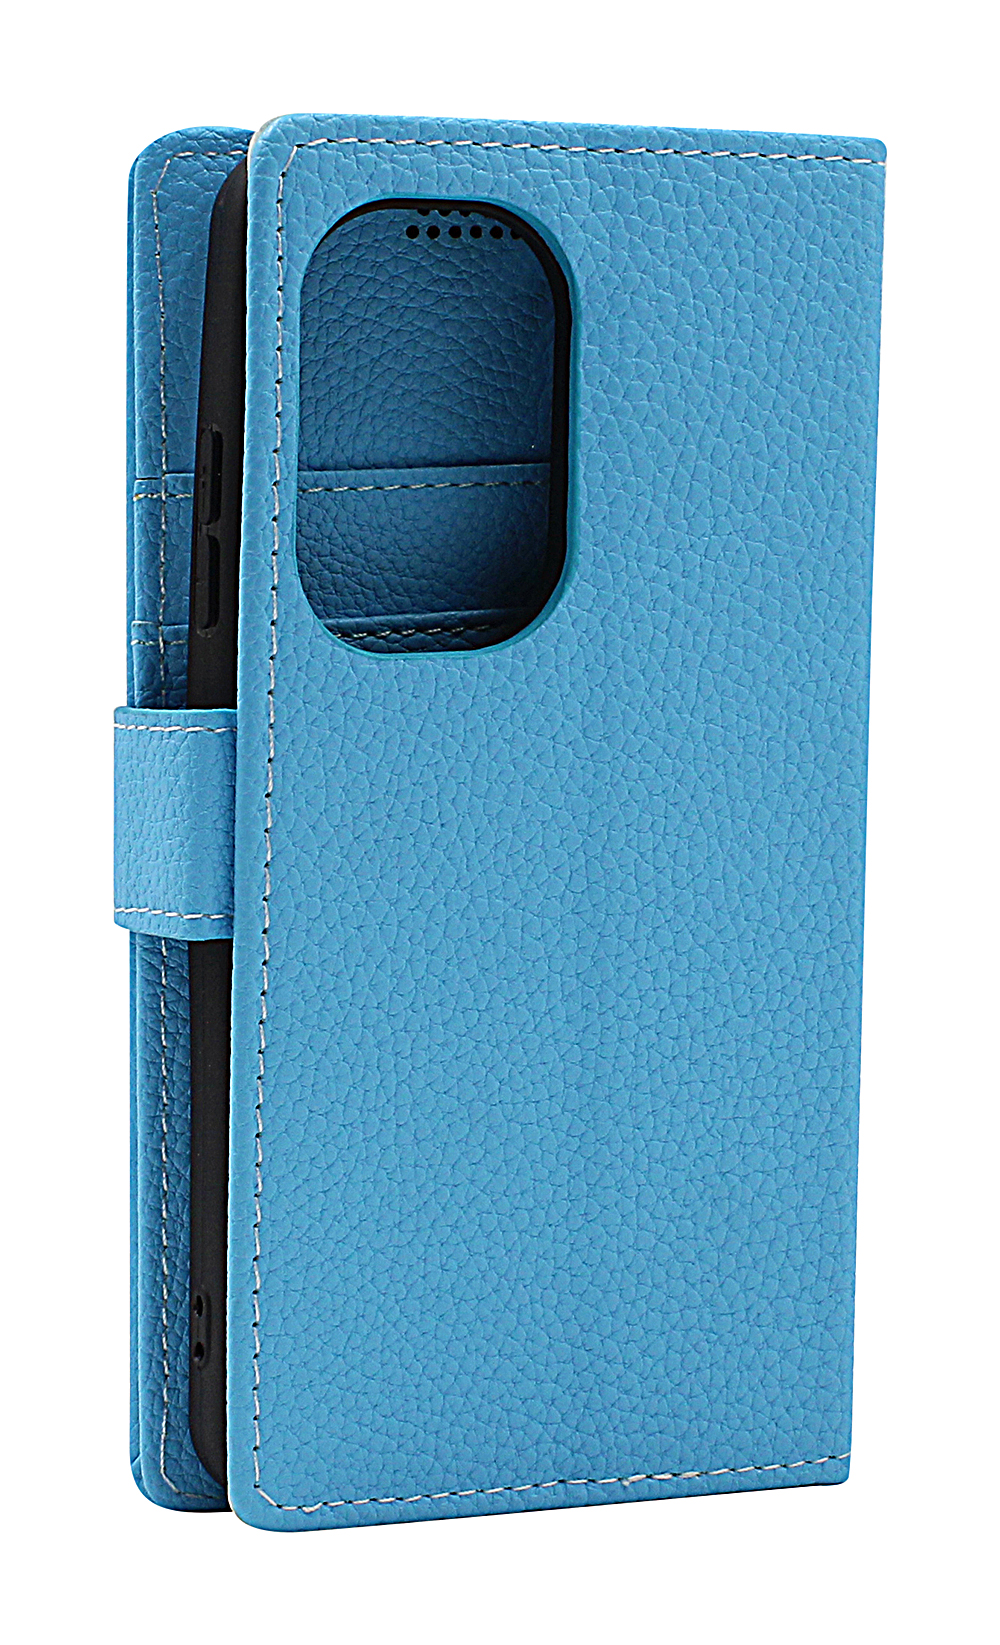 billigamobilskydd.seNew Standcase Wallet Asus Zenfone 9 5G